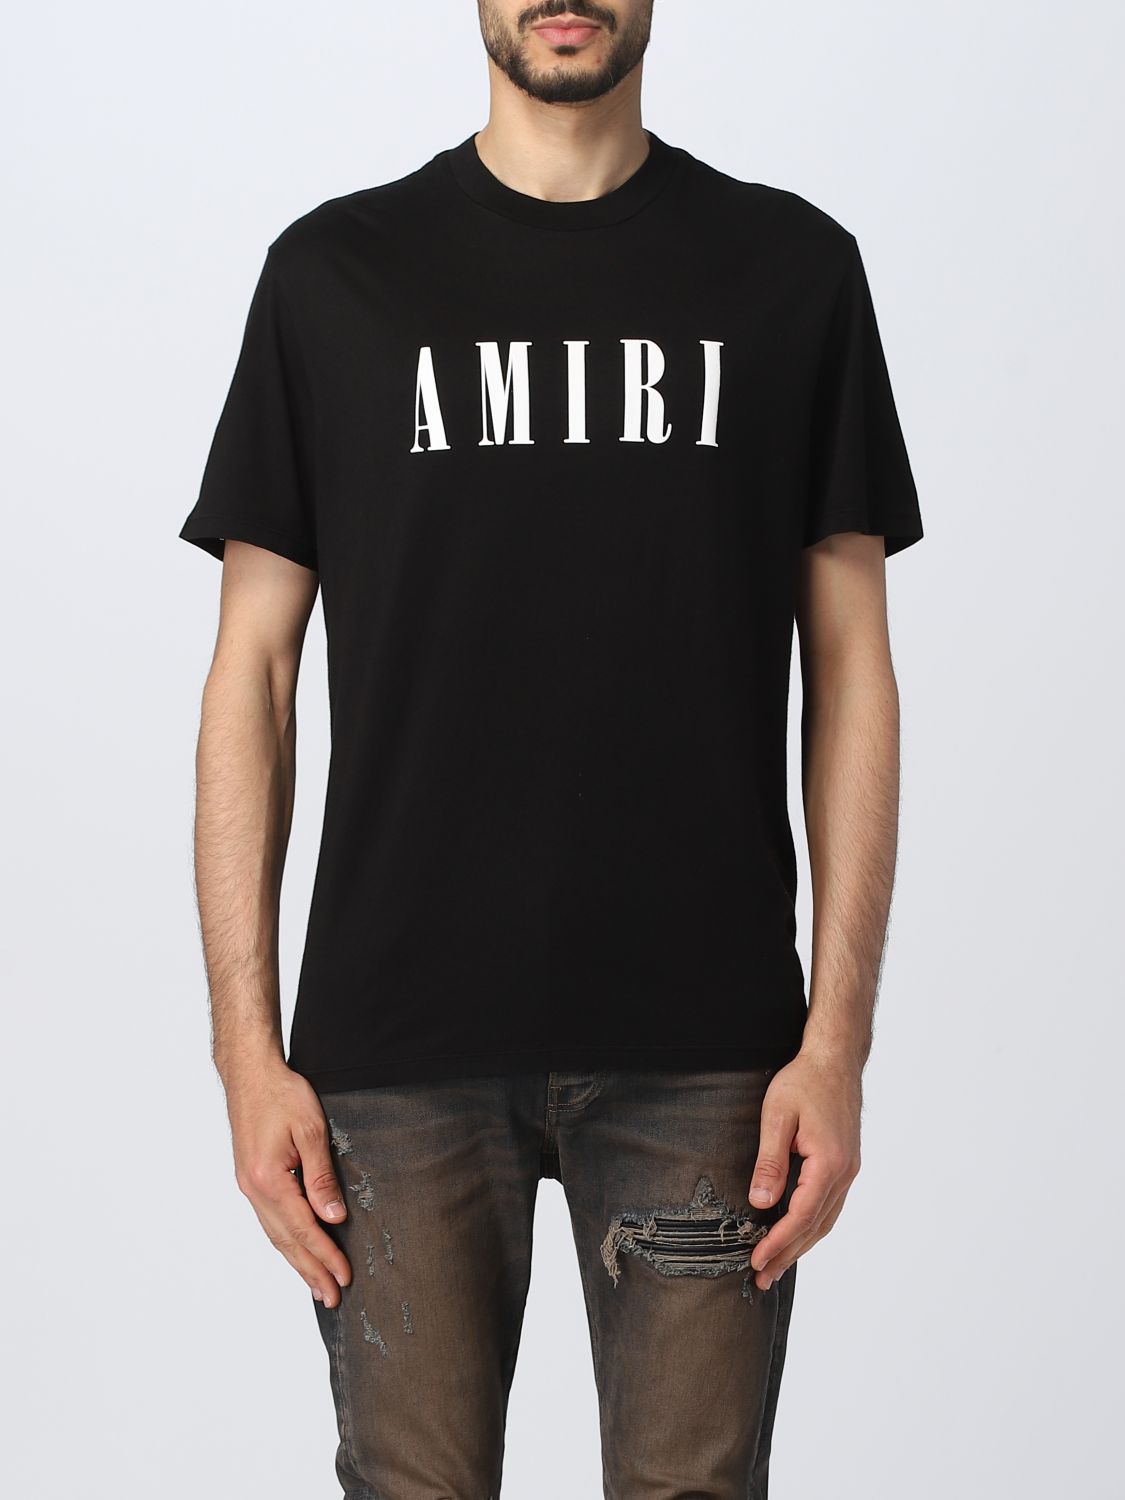 Amiri Tシャツ | hartwellspremium.com